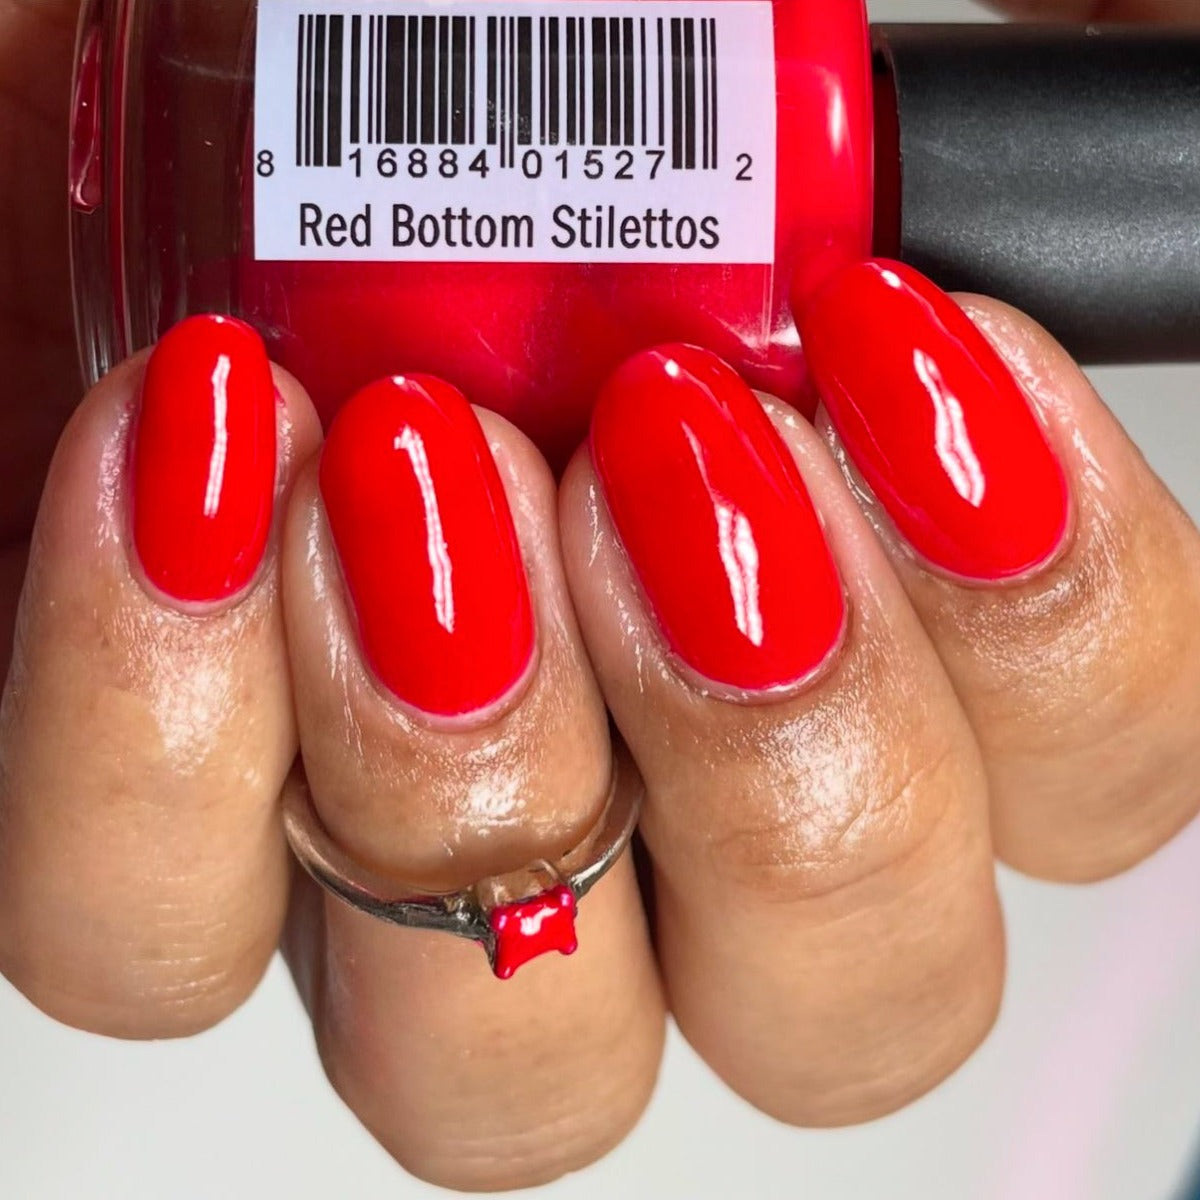 Red Bottom Stilettos - Matte Red